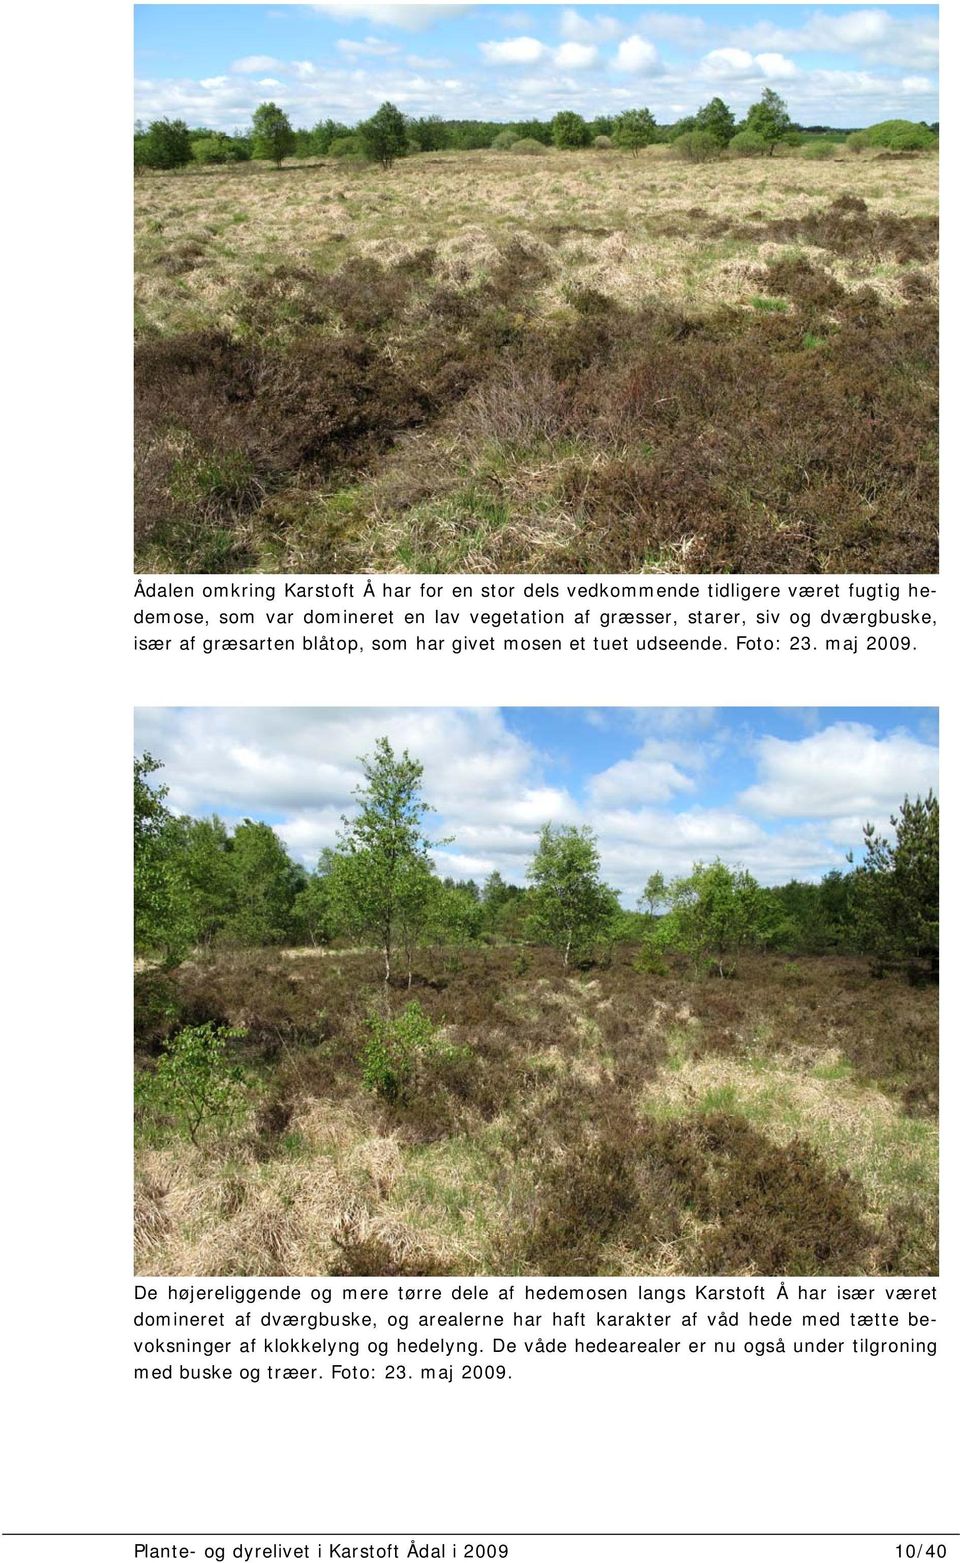 De højereliggende og mere tørre dele af hedemosen langs Karstoft Å har især været domineret af dværgbuske, og arealerne har haft karakter af våd